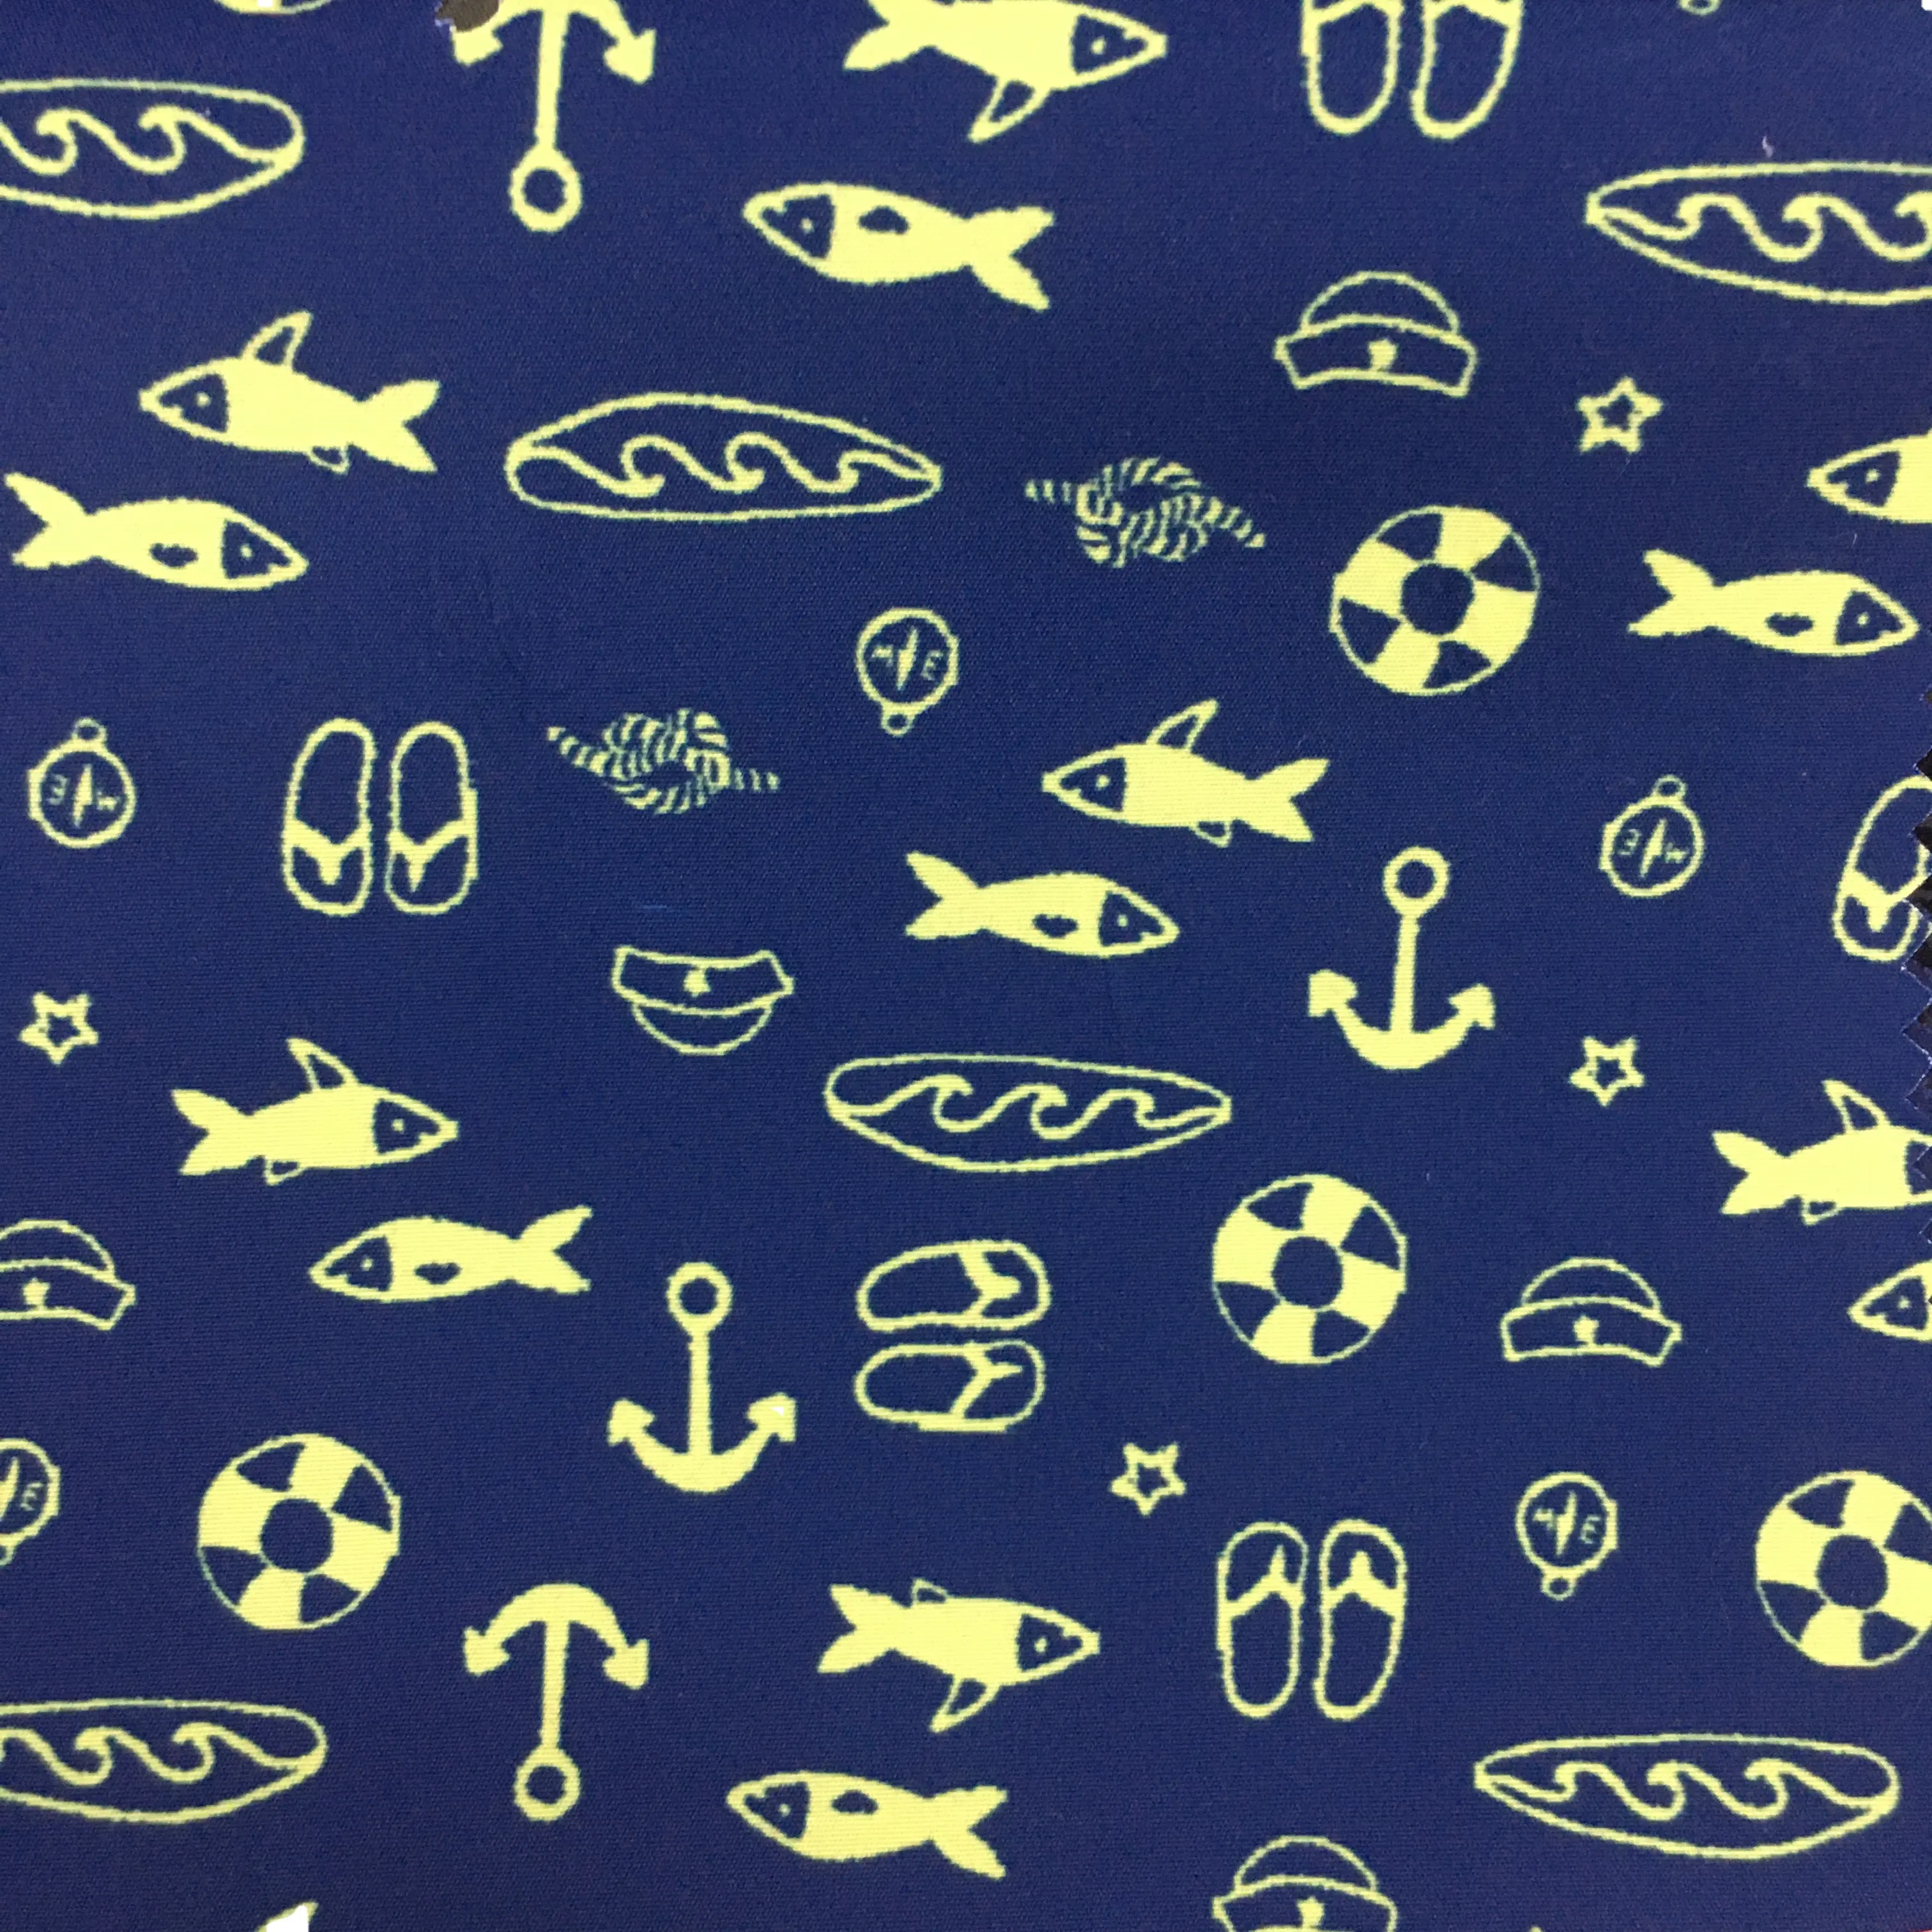 Sealife 및 항해 패턴 인쇄 일반 복숭아 신발 캐스 켓 비치 반바지